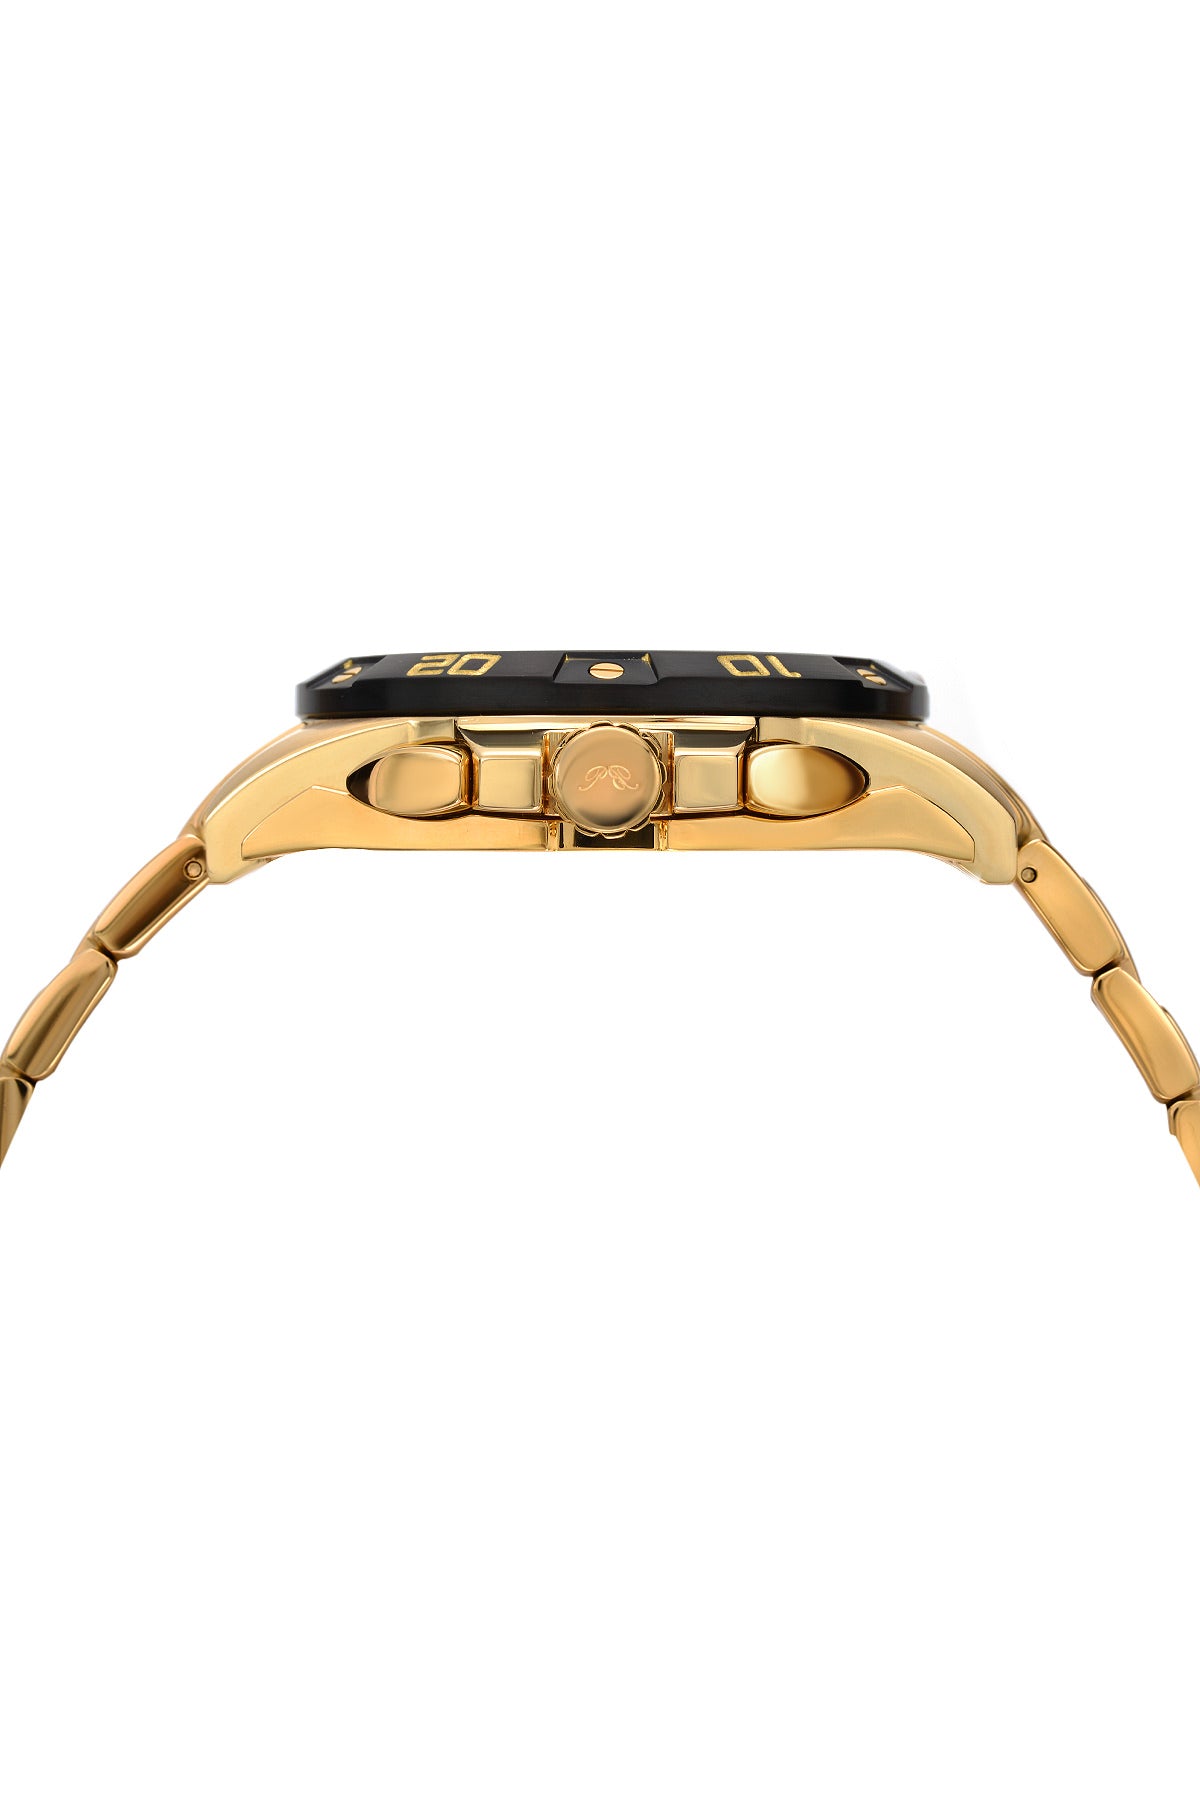 Porsamo Bleu Francoise luxury chronograph men's stainless steel watch, gold, black, white 243BFRS